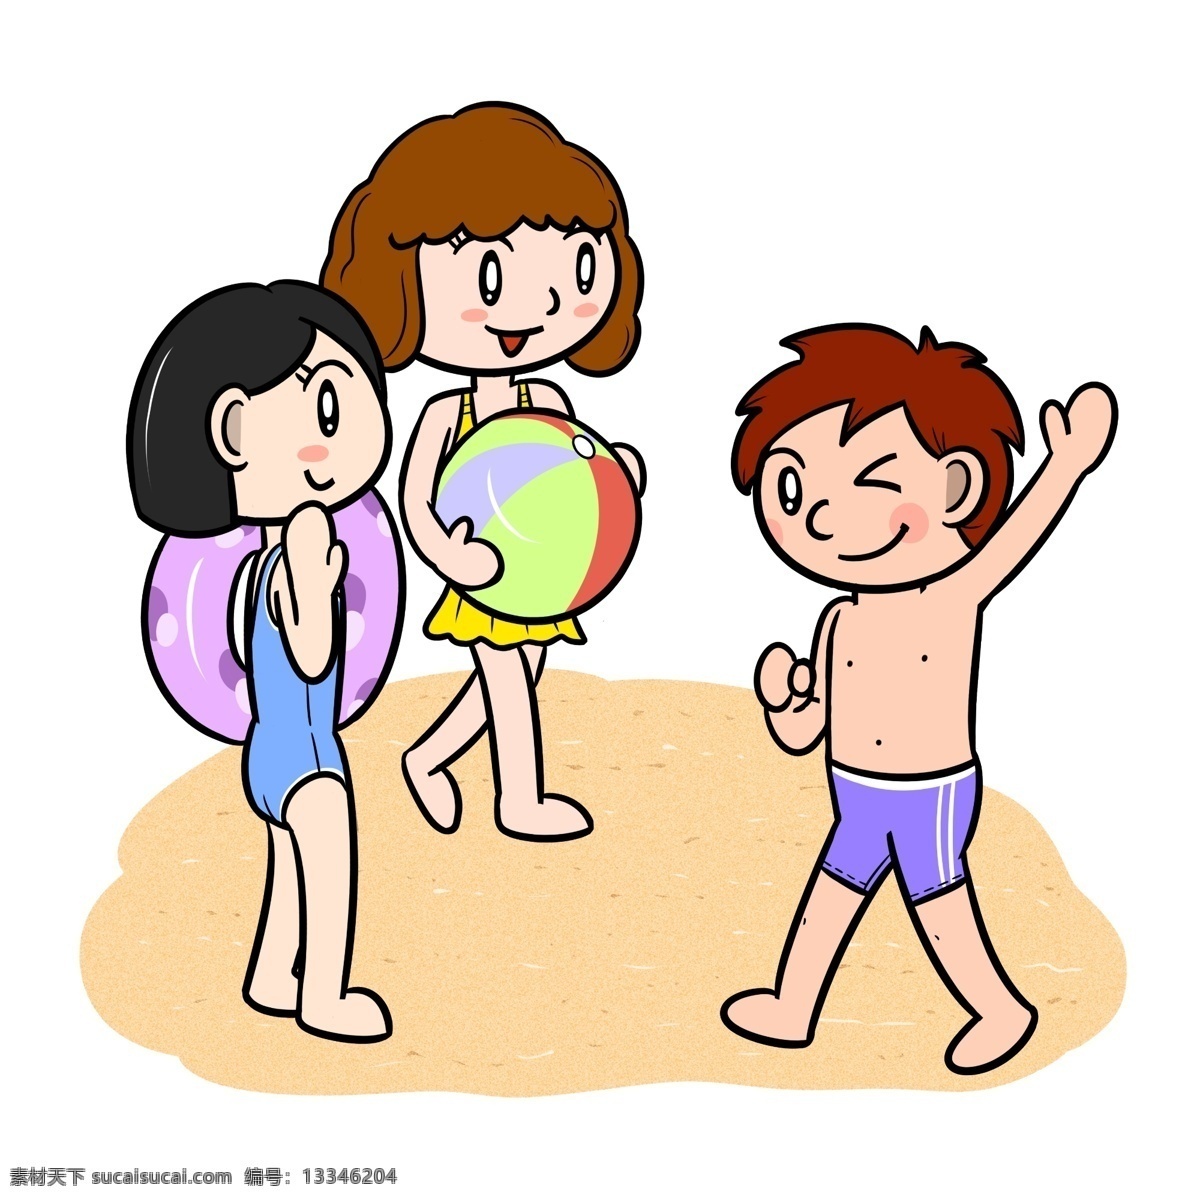 卡通 夏季 儿童 沙滩 嬉闹 透明 底 夏天 玩耍 海边 海滩 海边人物 夏季人物 夏天人物 卡通人物 卡通夏季